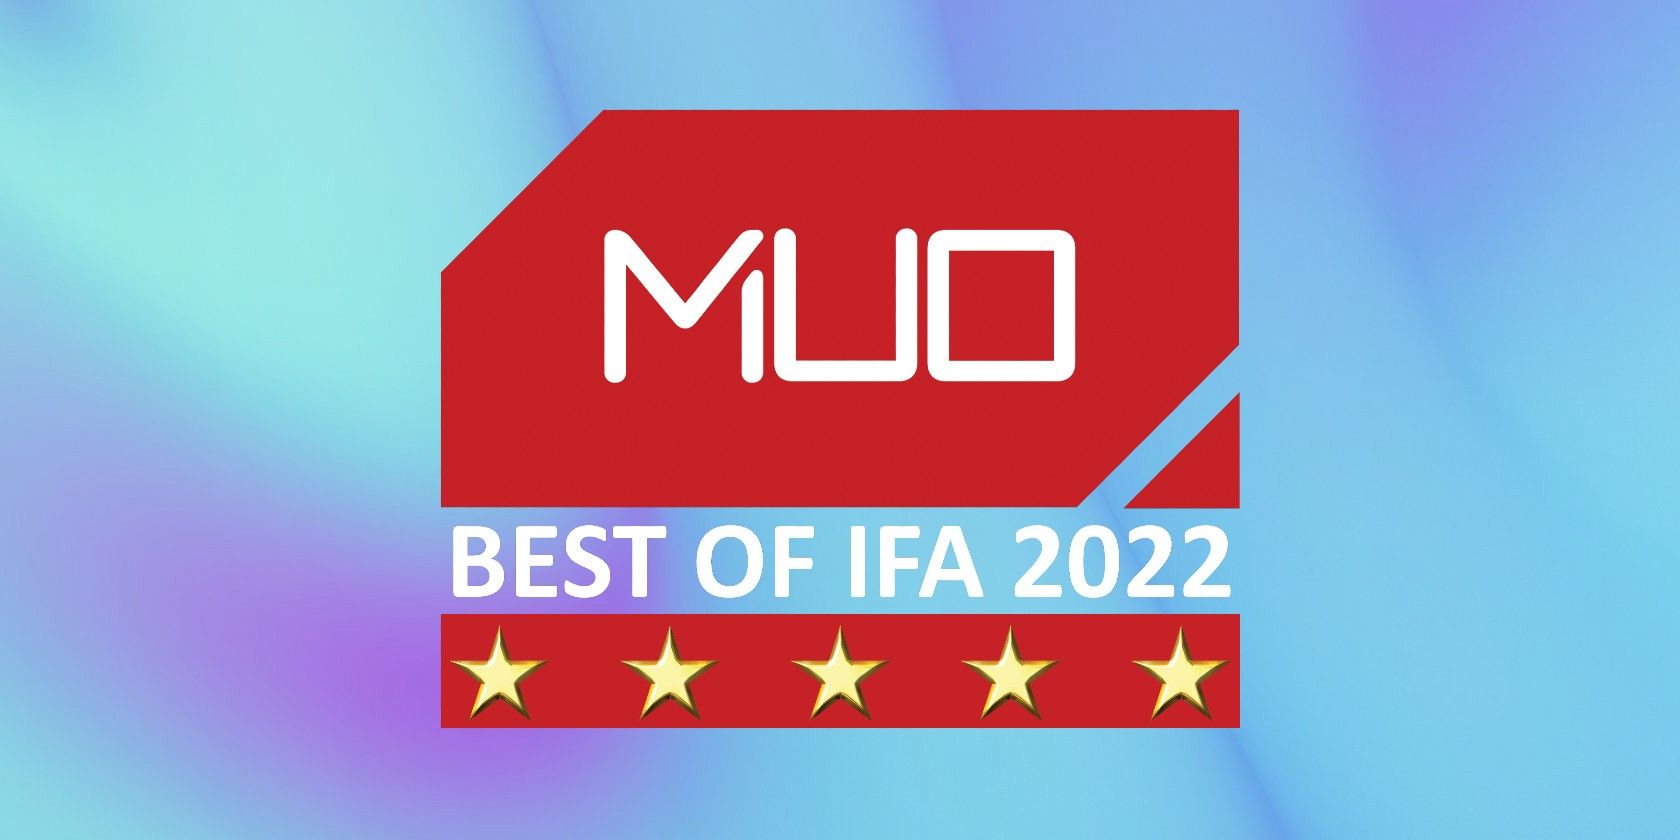 MUO IFA 2022 FI